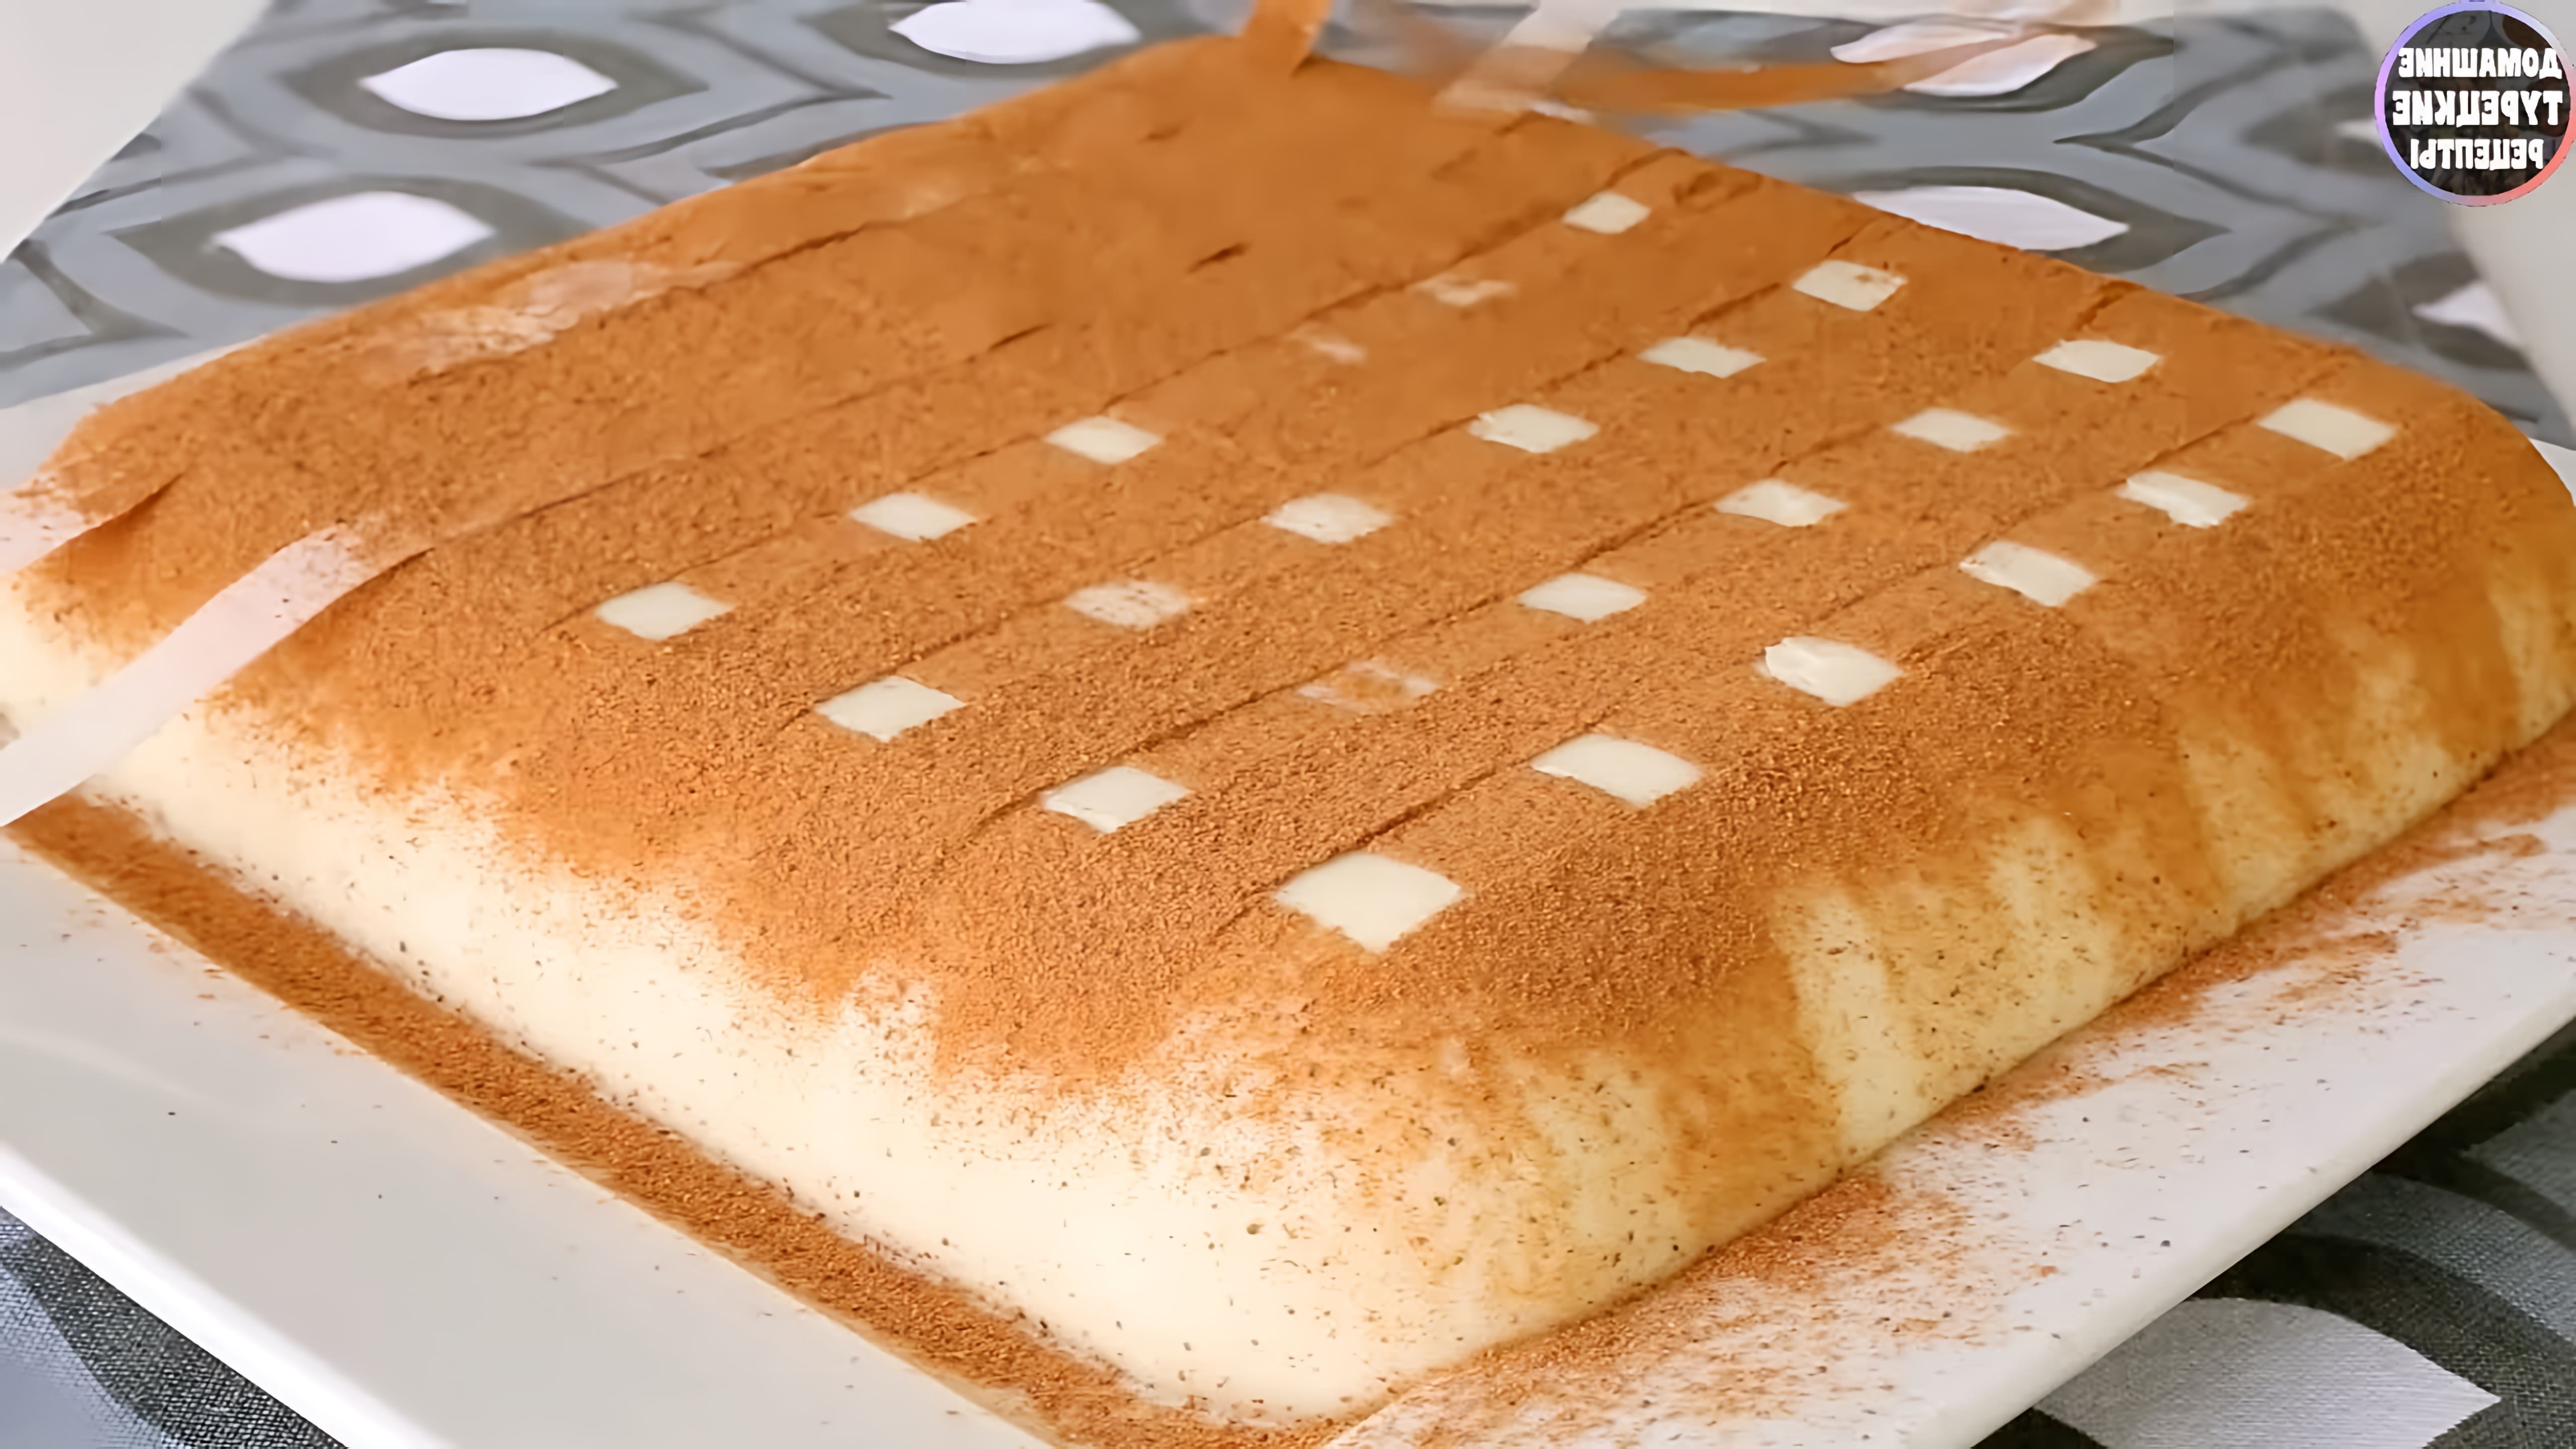 В этом видео демонстрируется рецепт приготовления турецкого молочного пудинга